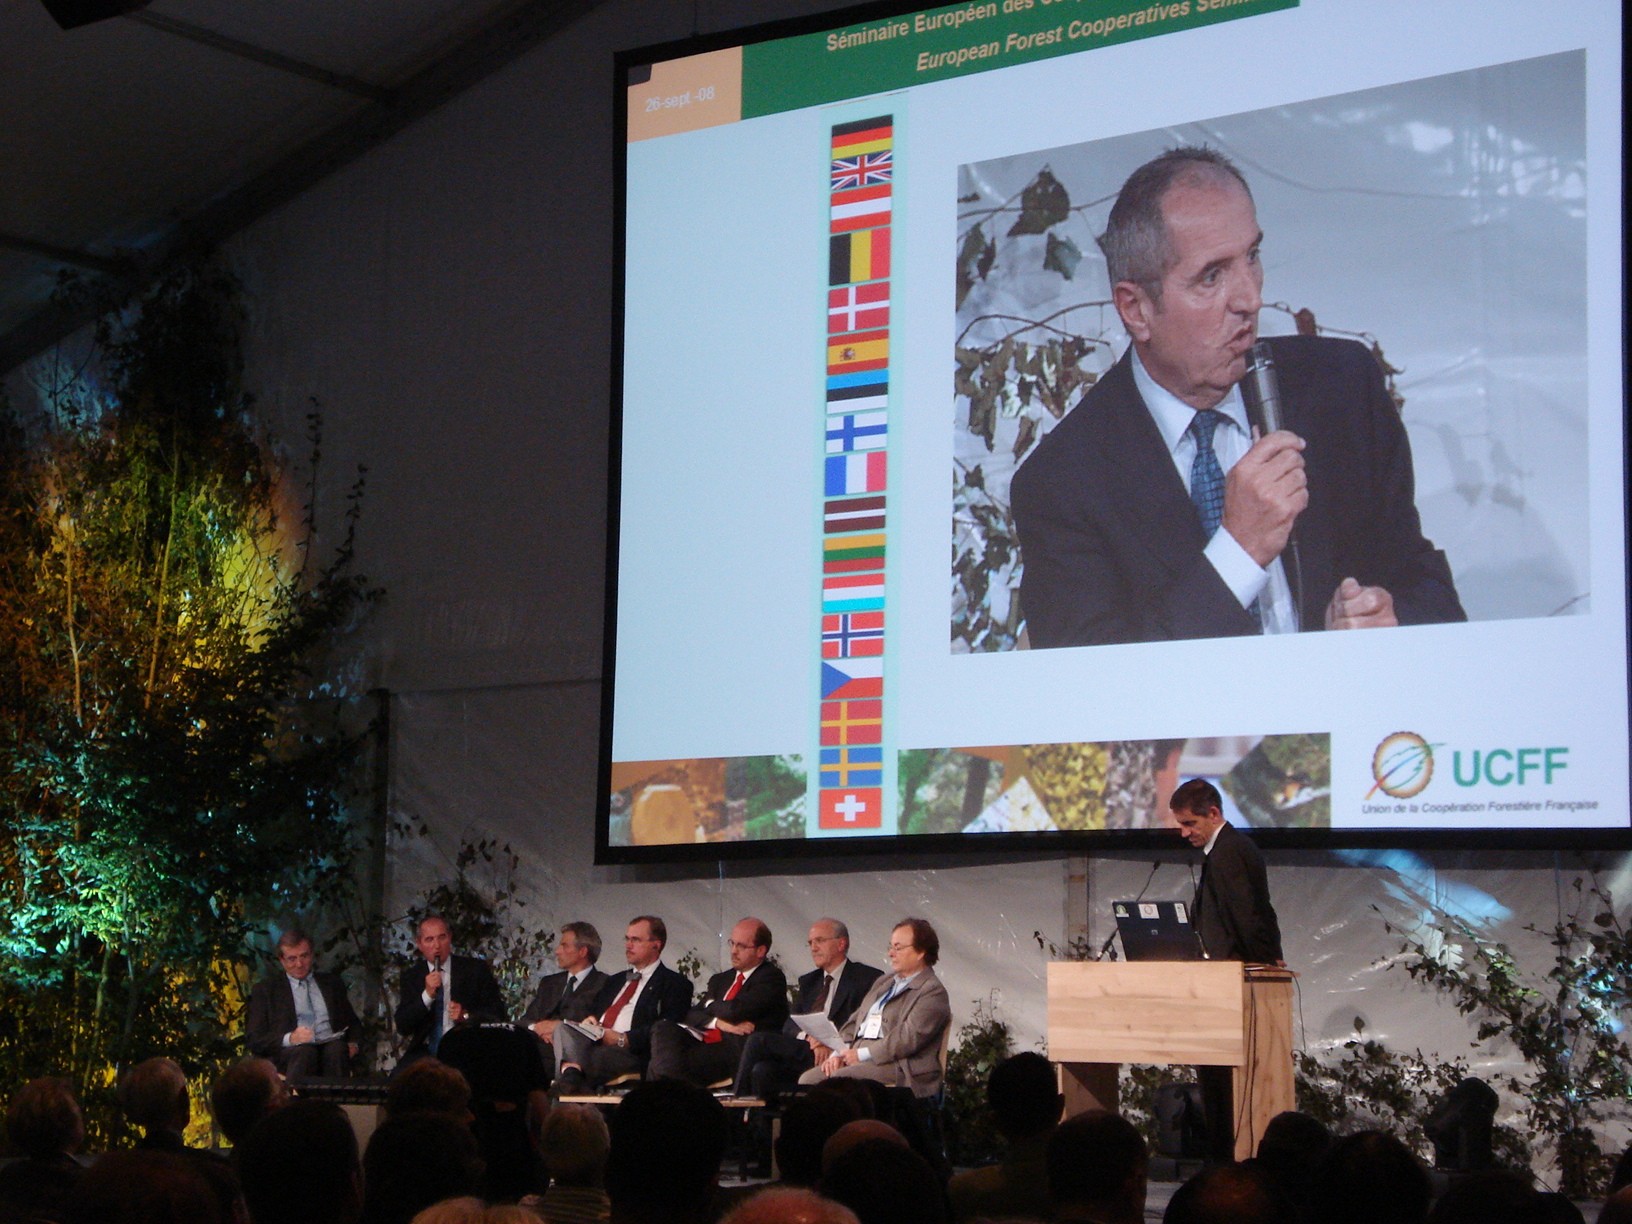 2012, l’année internationale des coopératives : La forêt a besoin de coopération !